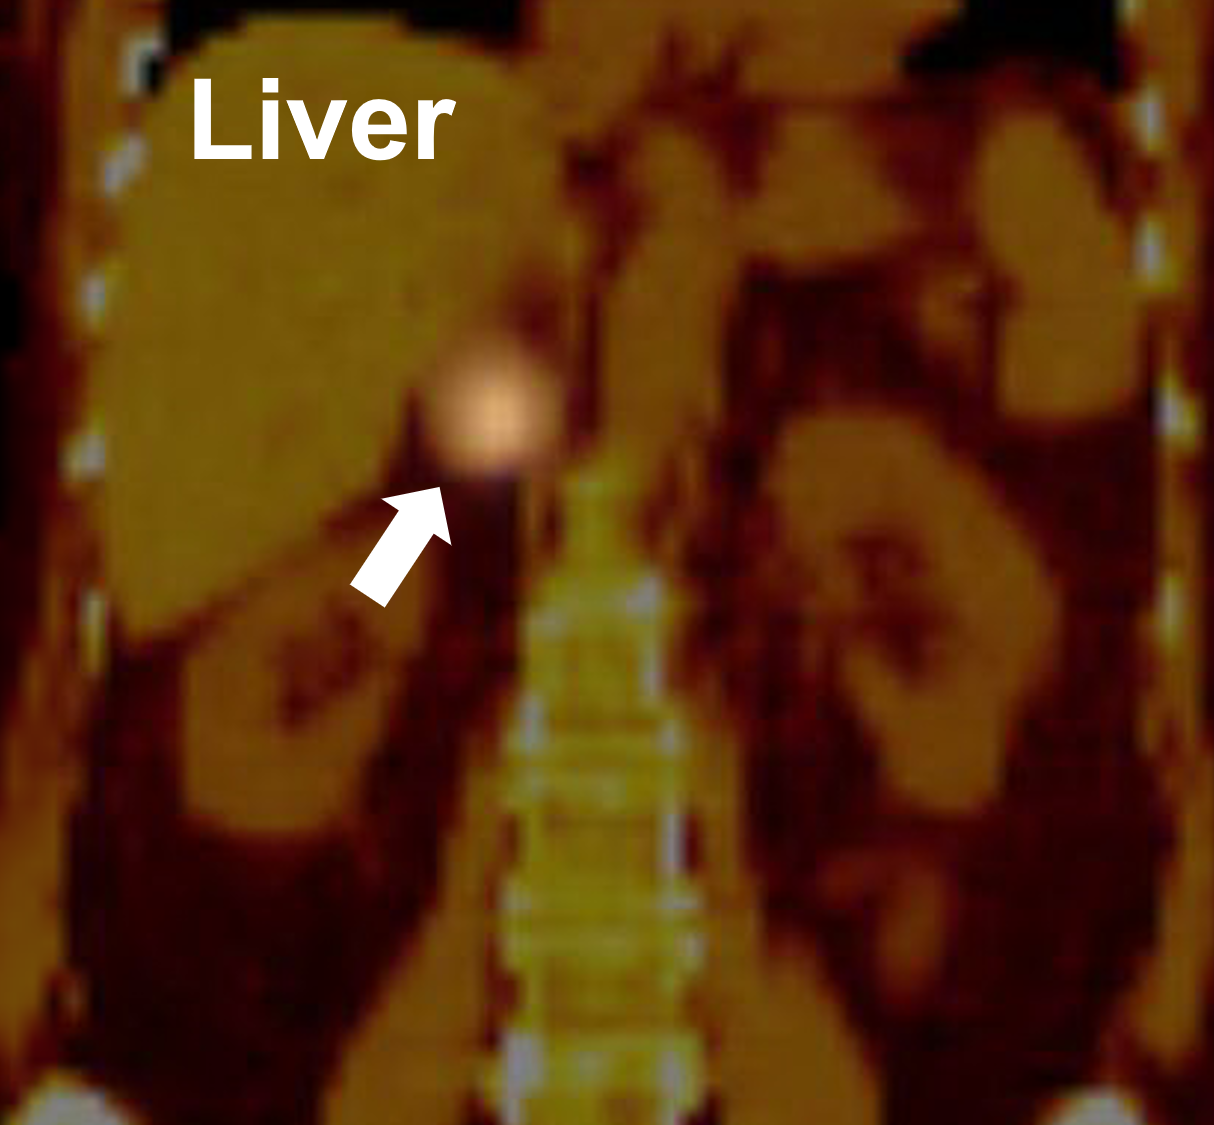 Una scansione MIBG che dimostra un assorbimento positivo nella ghiandola surrenale destra (freccia) che dimostra essere un feocromocitoma.